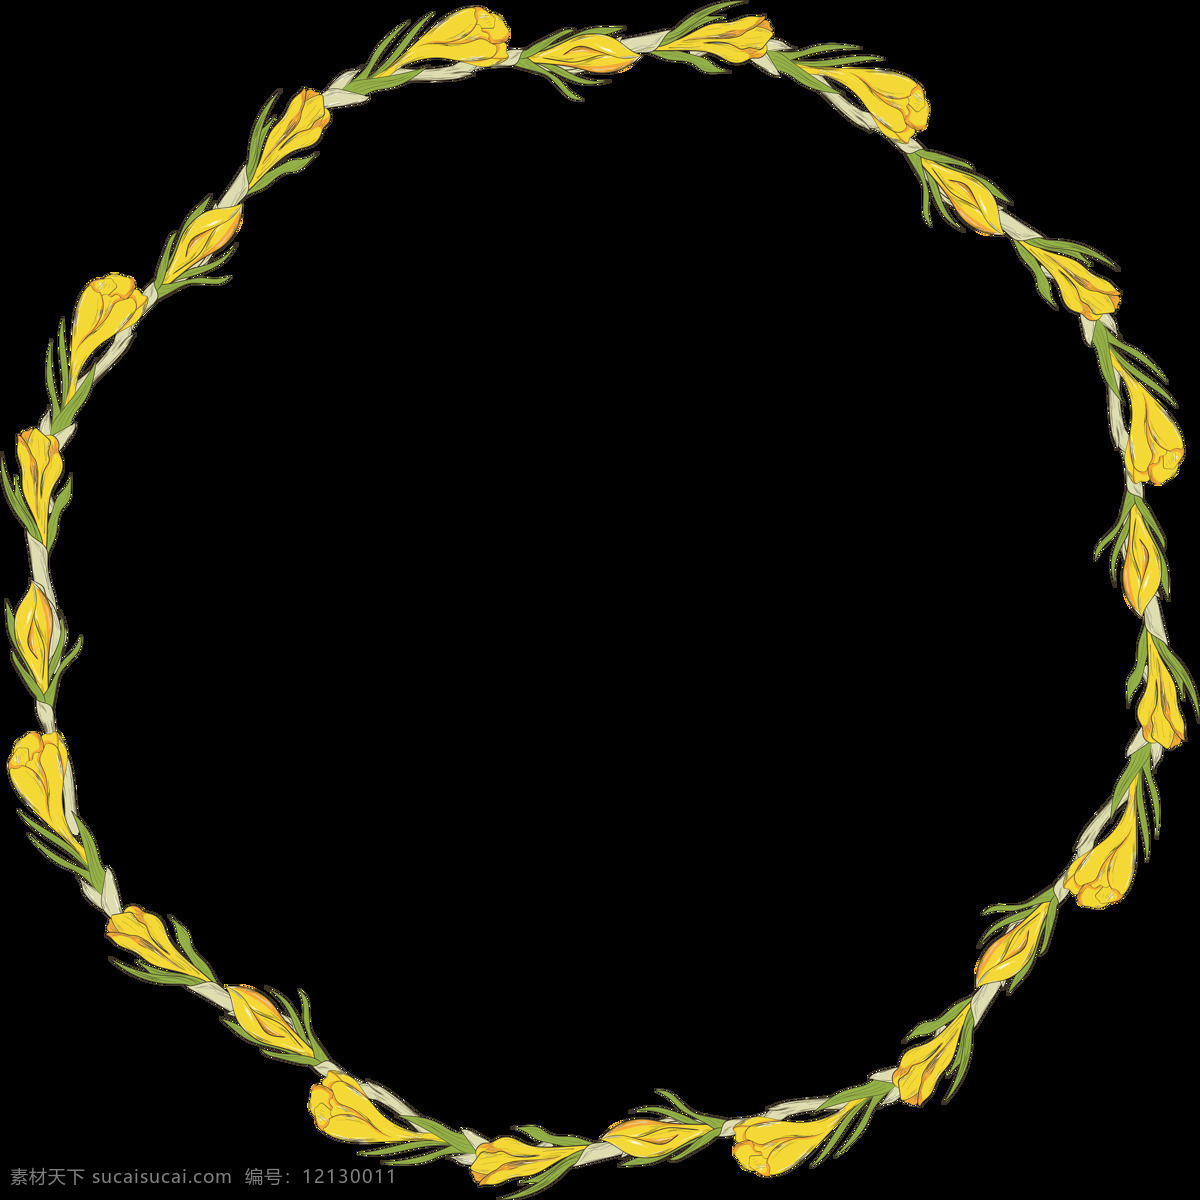 美丽 黄色 花环 透明 花朵 花草 花藤 花枝 绿叶 平面素材 设计素材 矢量素材